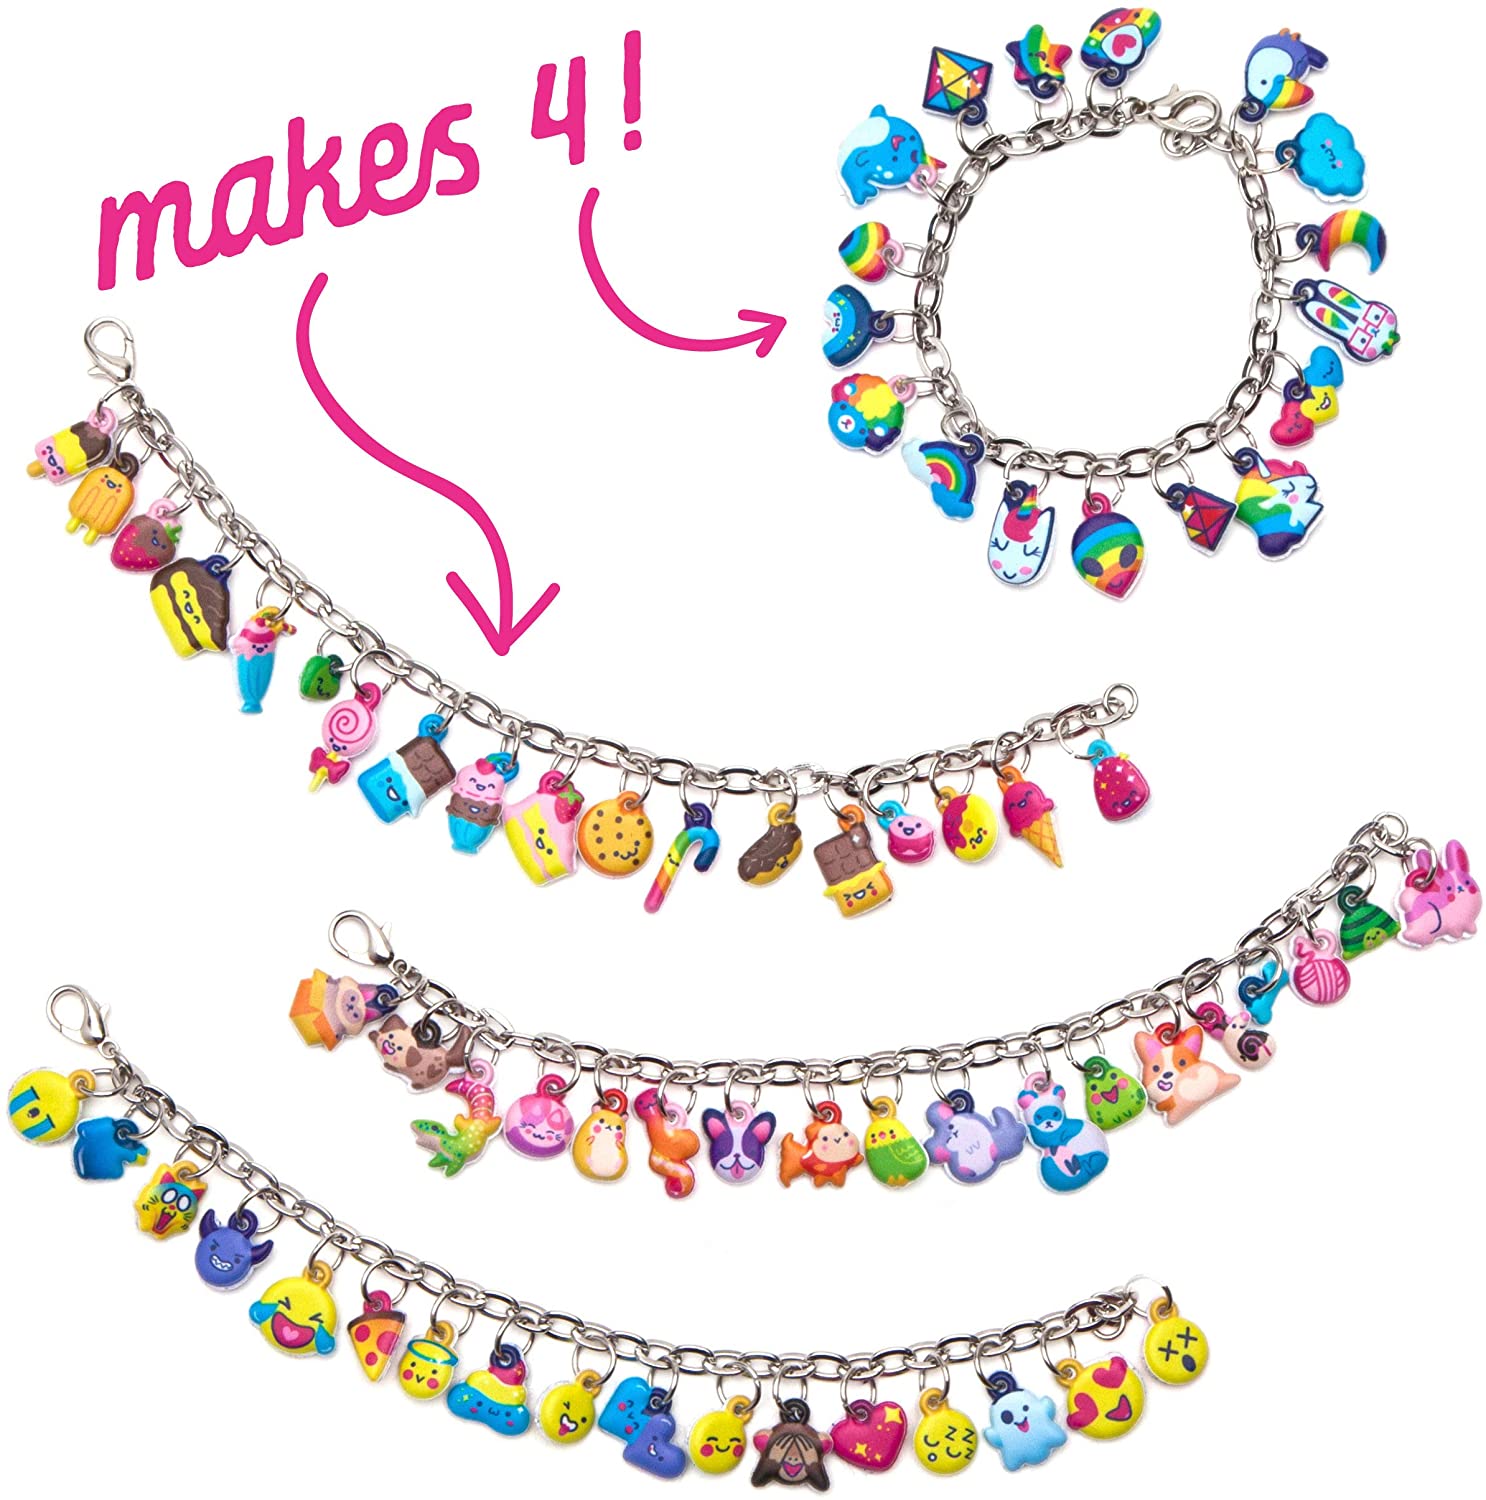 Multicolore Couleur Tissé Bonne Chance Bracelet Fashion Crafts Charm Jewelry Making 